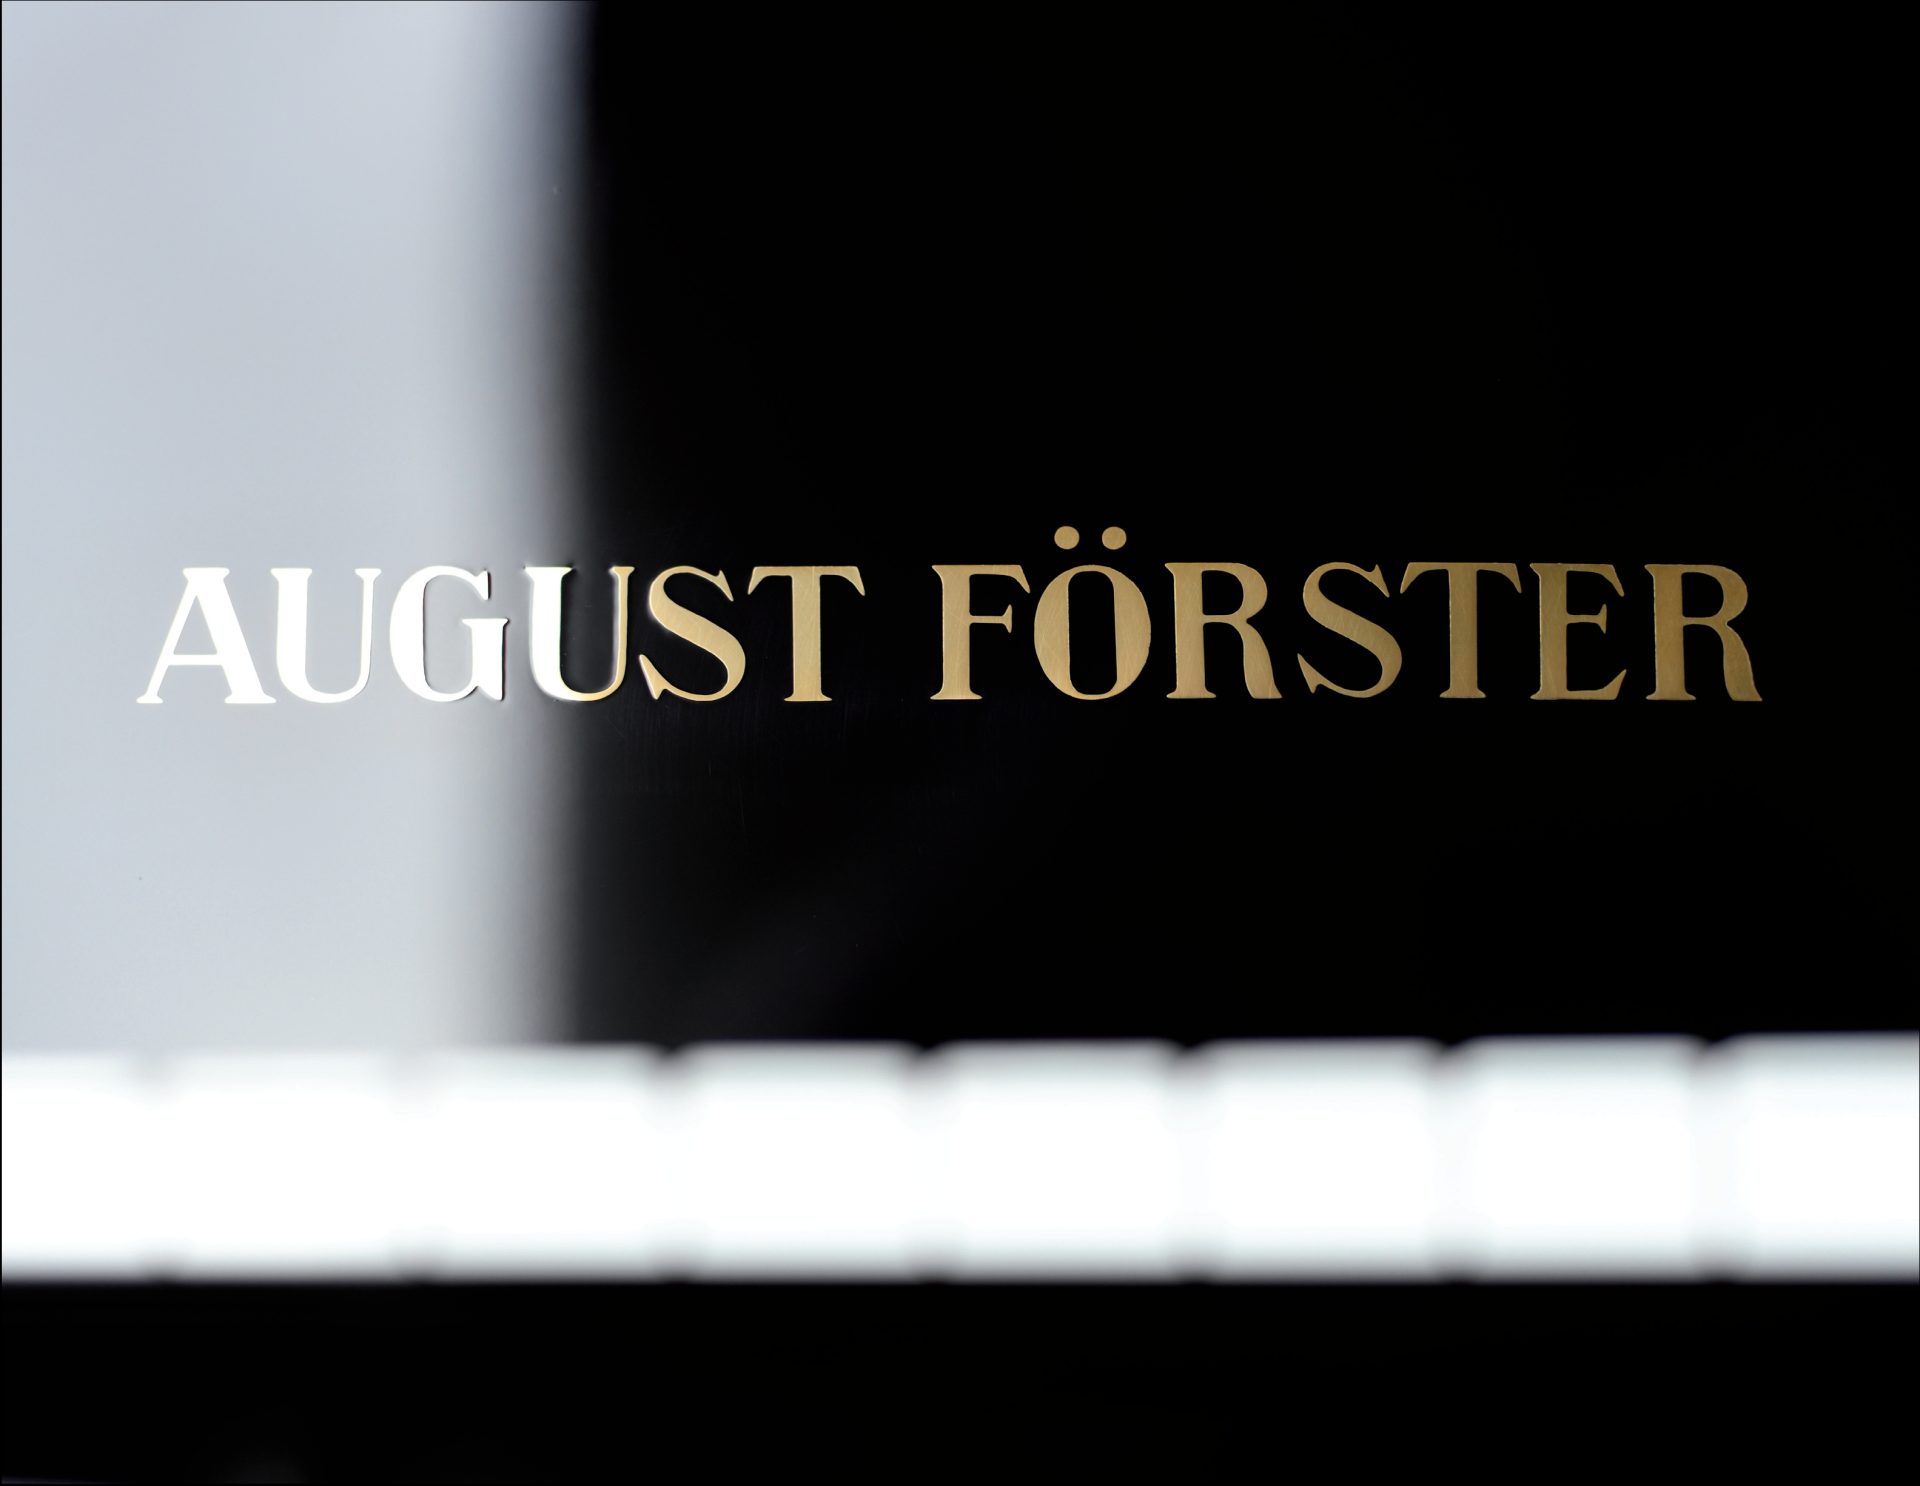 August Förster
125 F